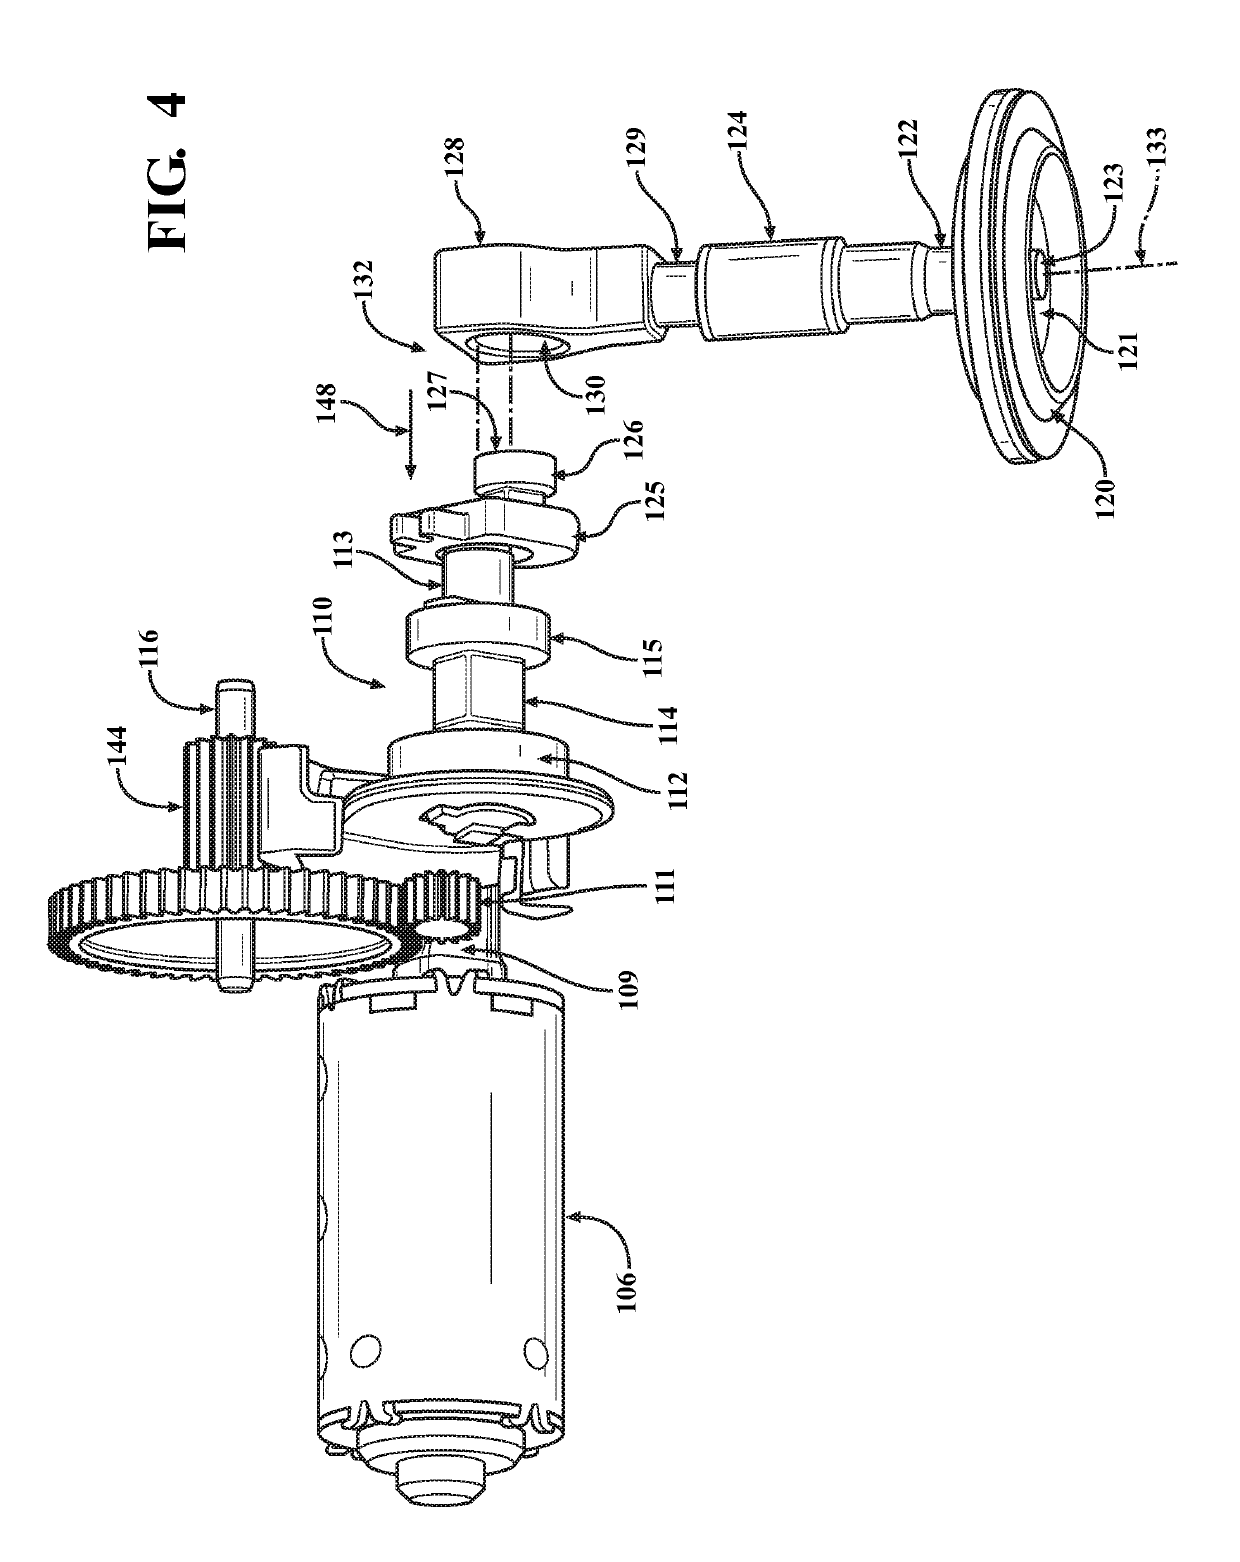 Split linkage mechanism for valve assembly